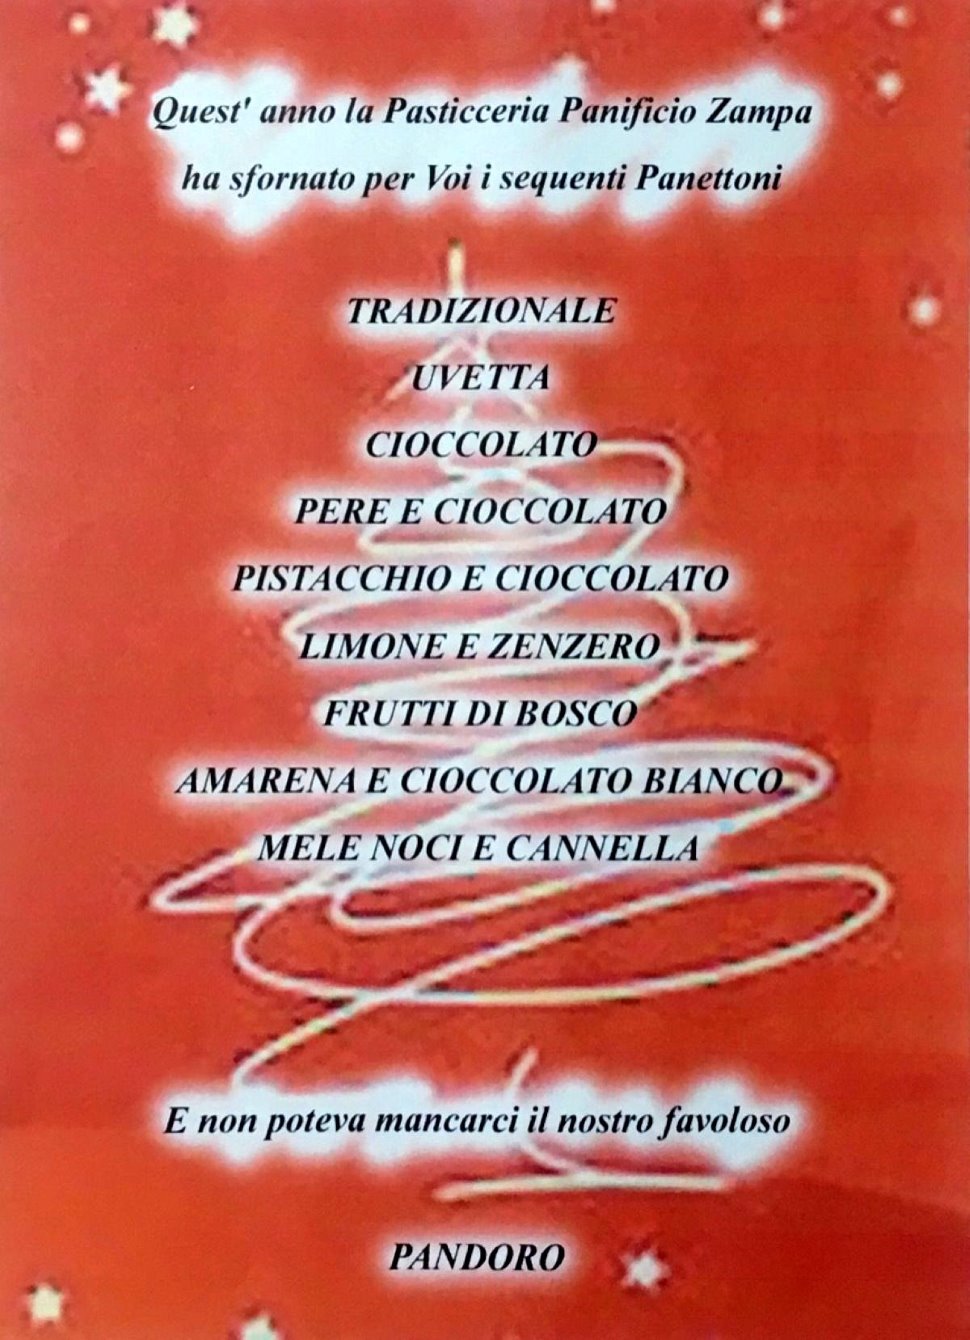 Arriva il Natale in Pasticceria Zampa a Udine